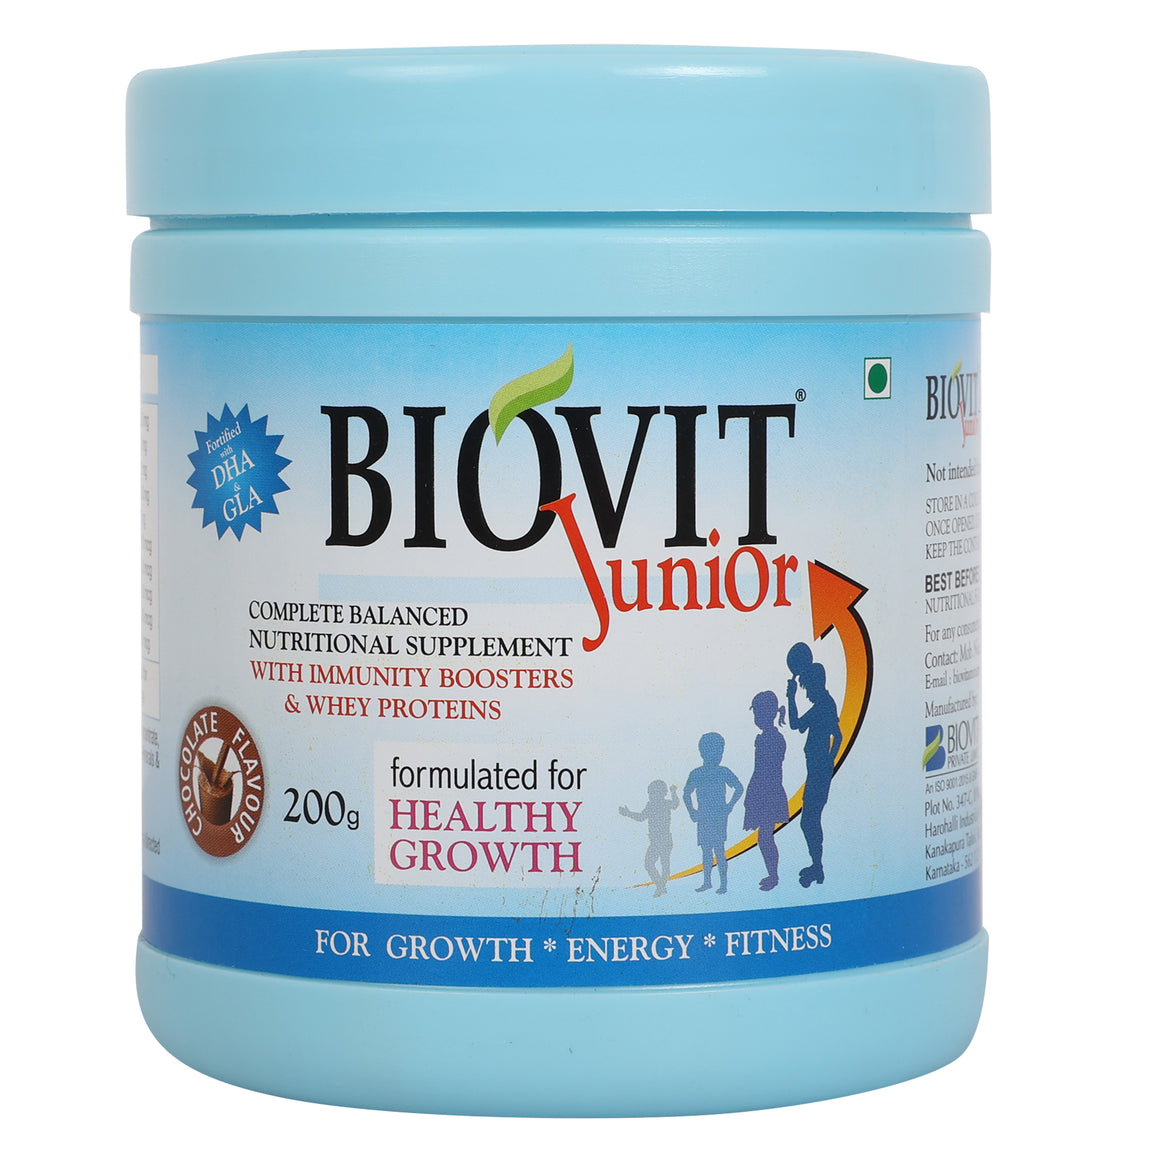 BIOVIT JUNIOR POWDER- The Complete Protein for Children